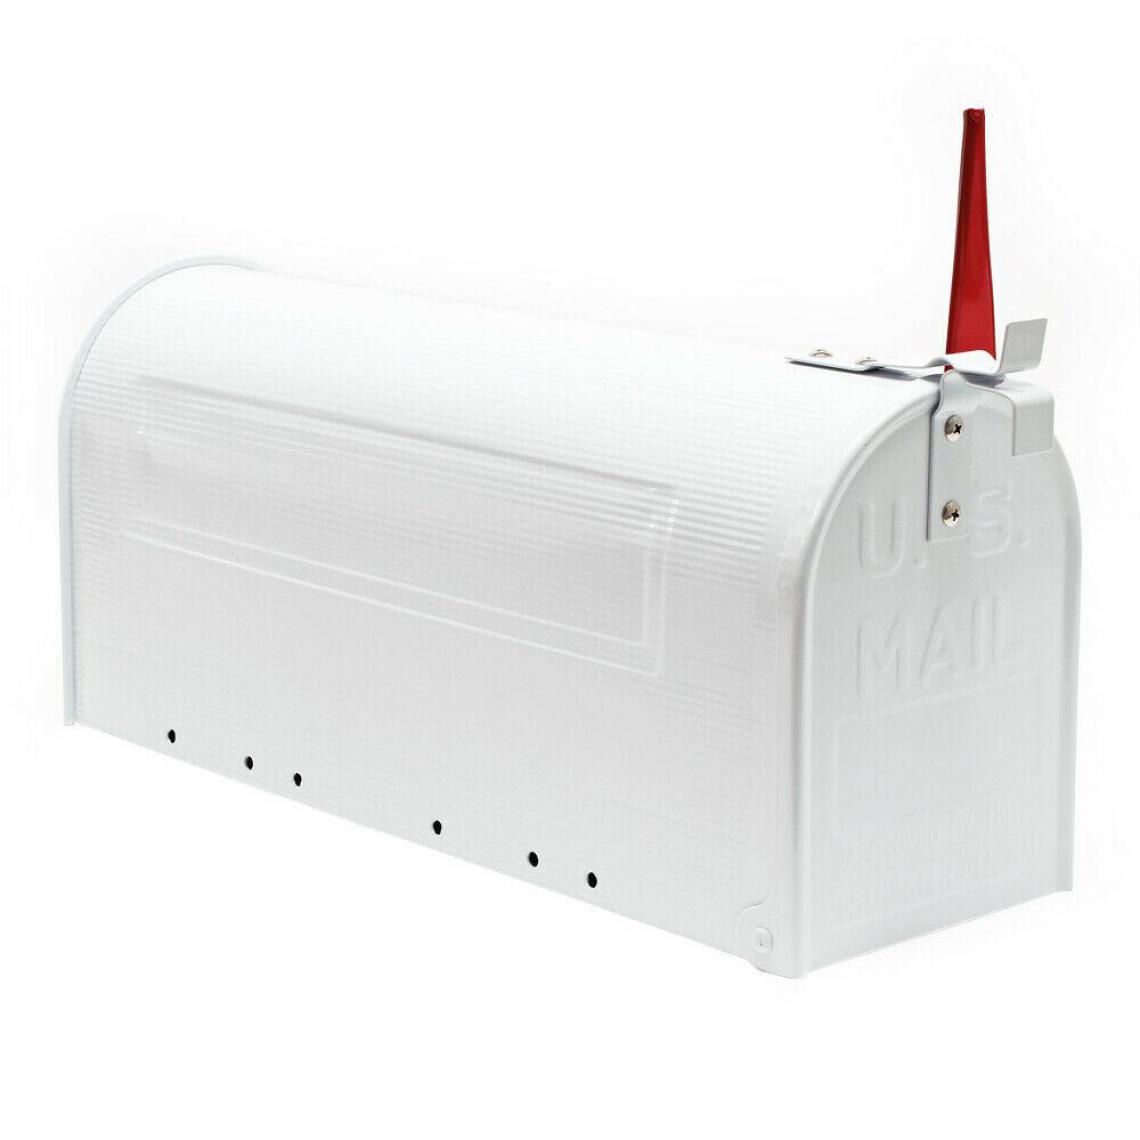 Helloshop26 - Boite aux lettres style américain design boite postale sur pied us mailbox blanc 16_0000086 - Boîte aux lettres